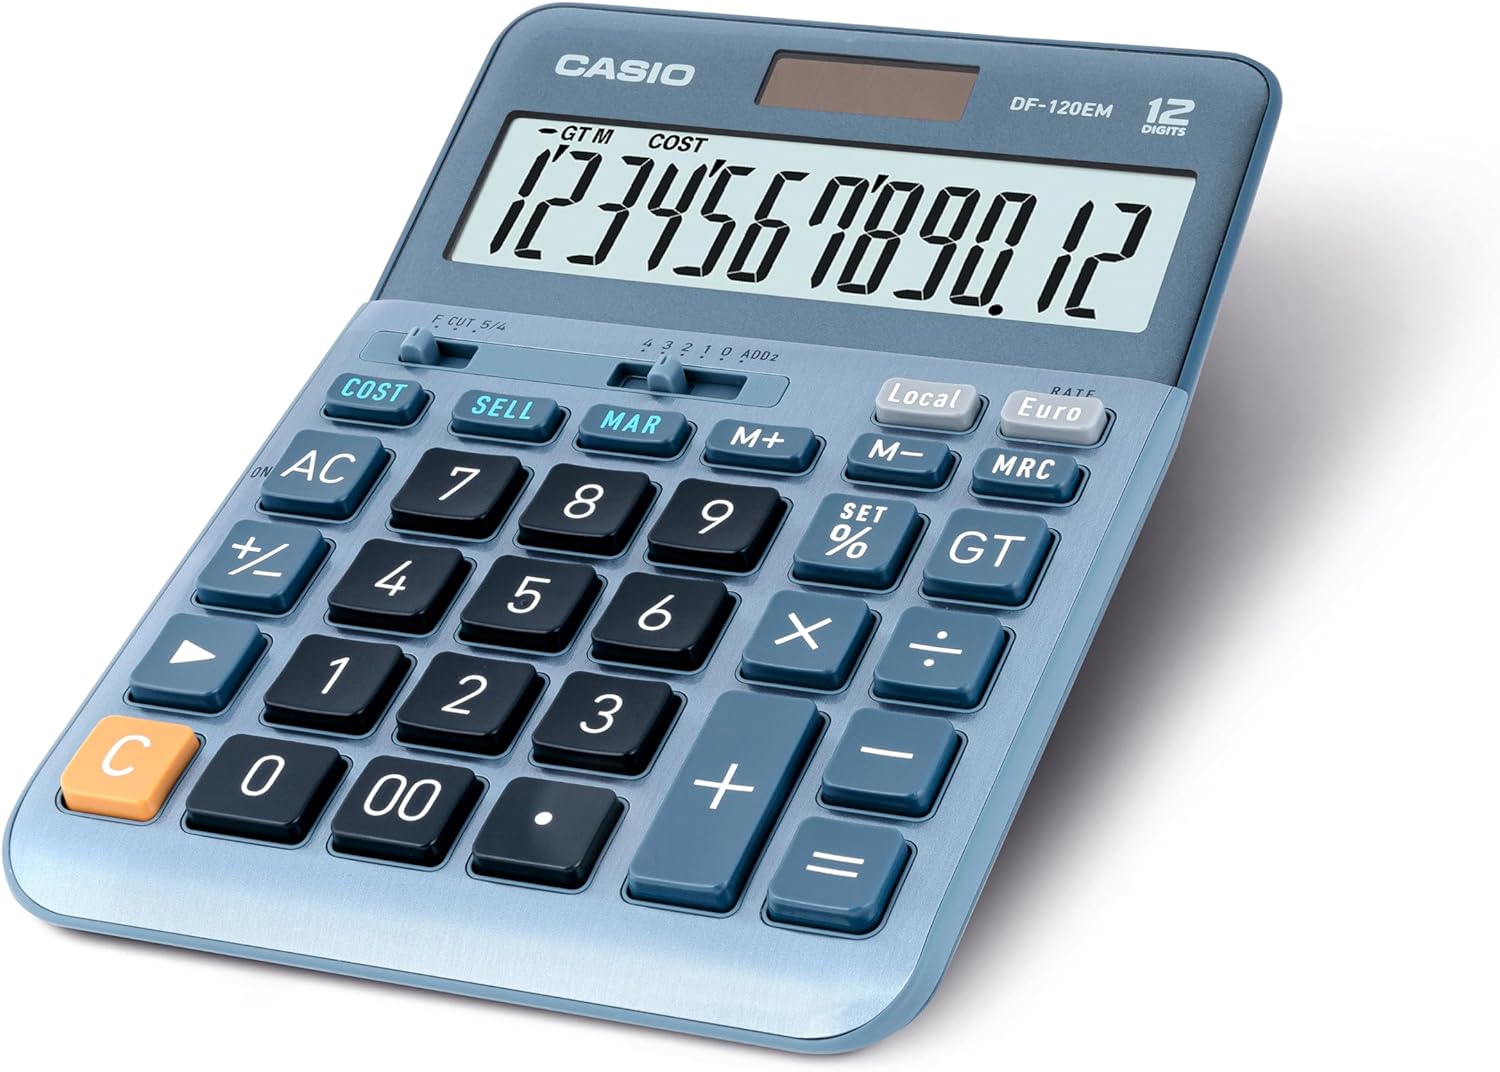 Calculatrice de bureau Casio DF-120EM - Écran extra large à 12 chiffres - Alimenté par énergie solaire et batterie - Couleur bleue